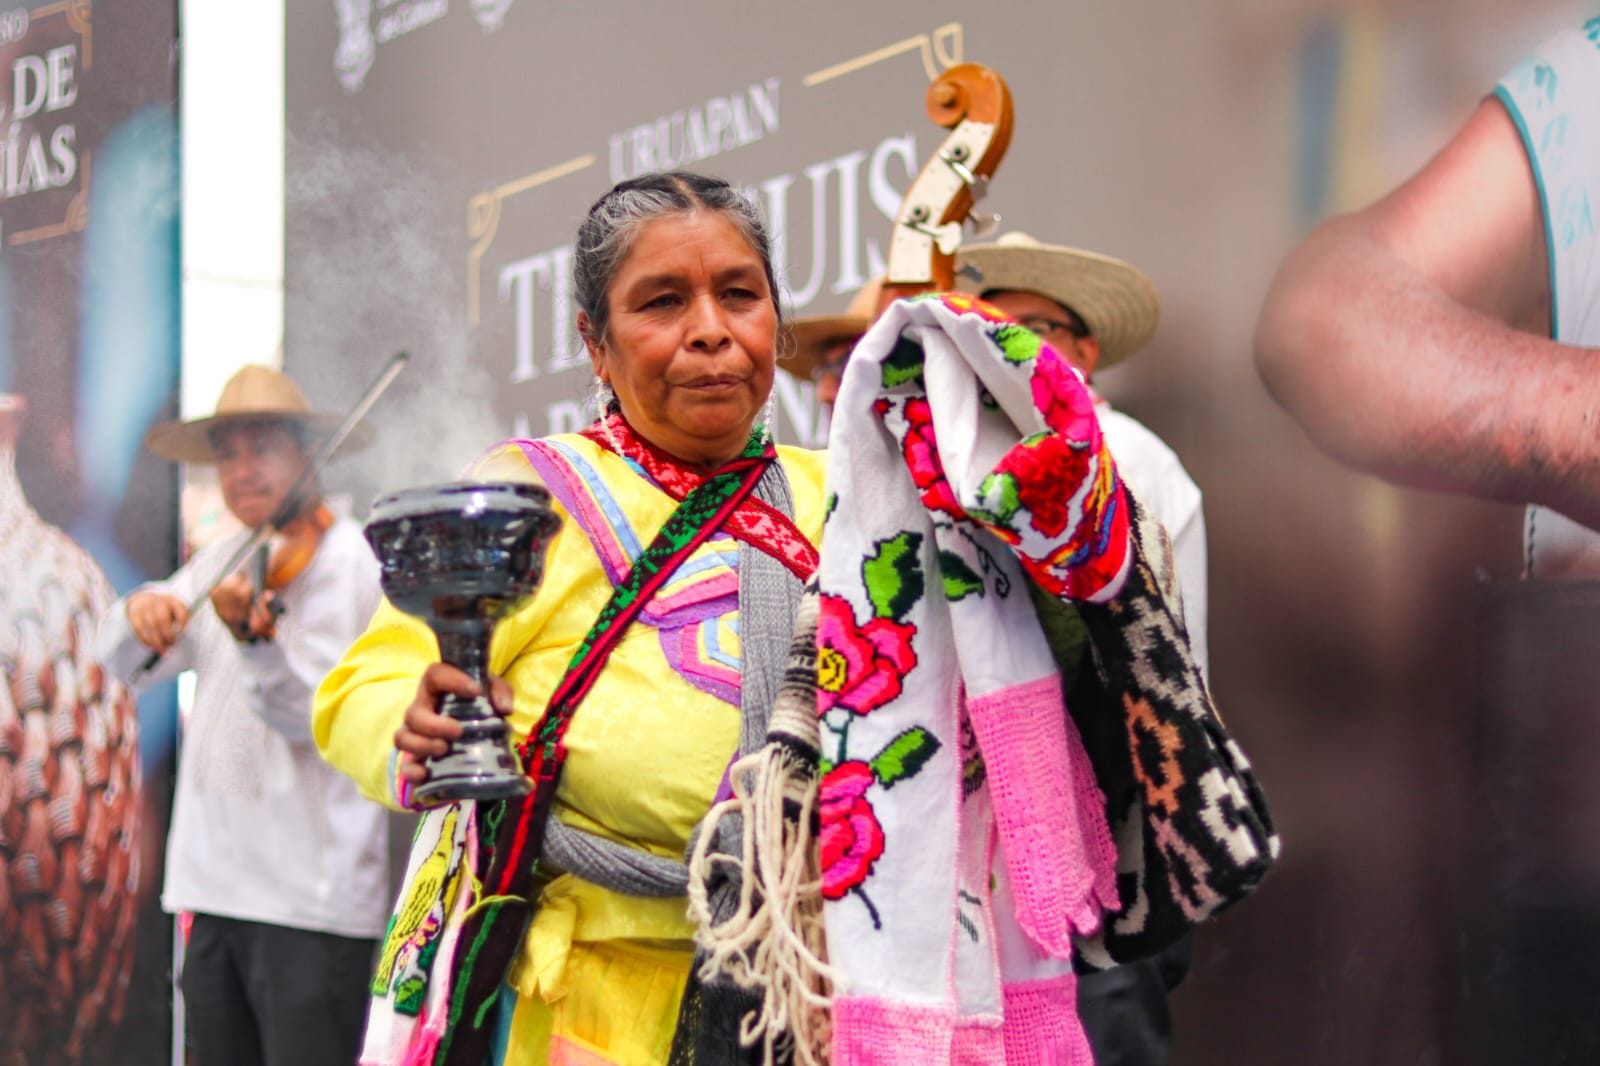 La portadora de tradición Beatriz Guzmán Catarino es una actual precursora de estos usos ancestrales que promueve entre las juventudes de su pueblo que desean casarse.